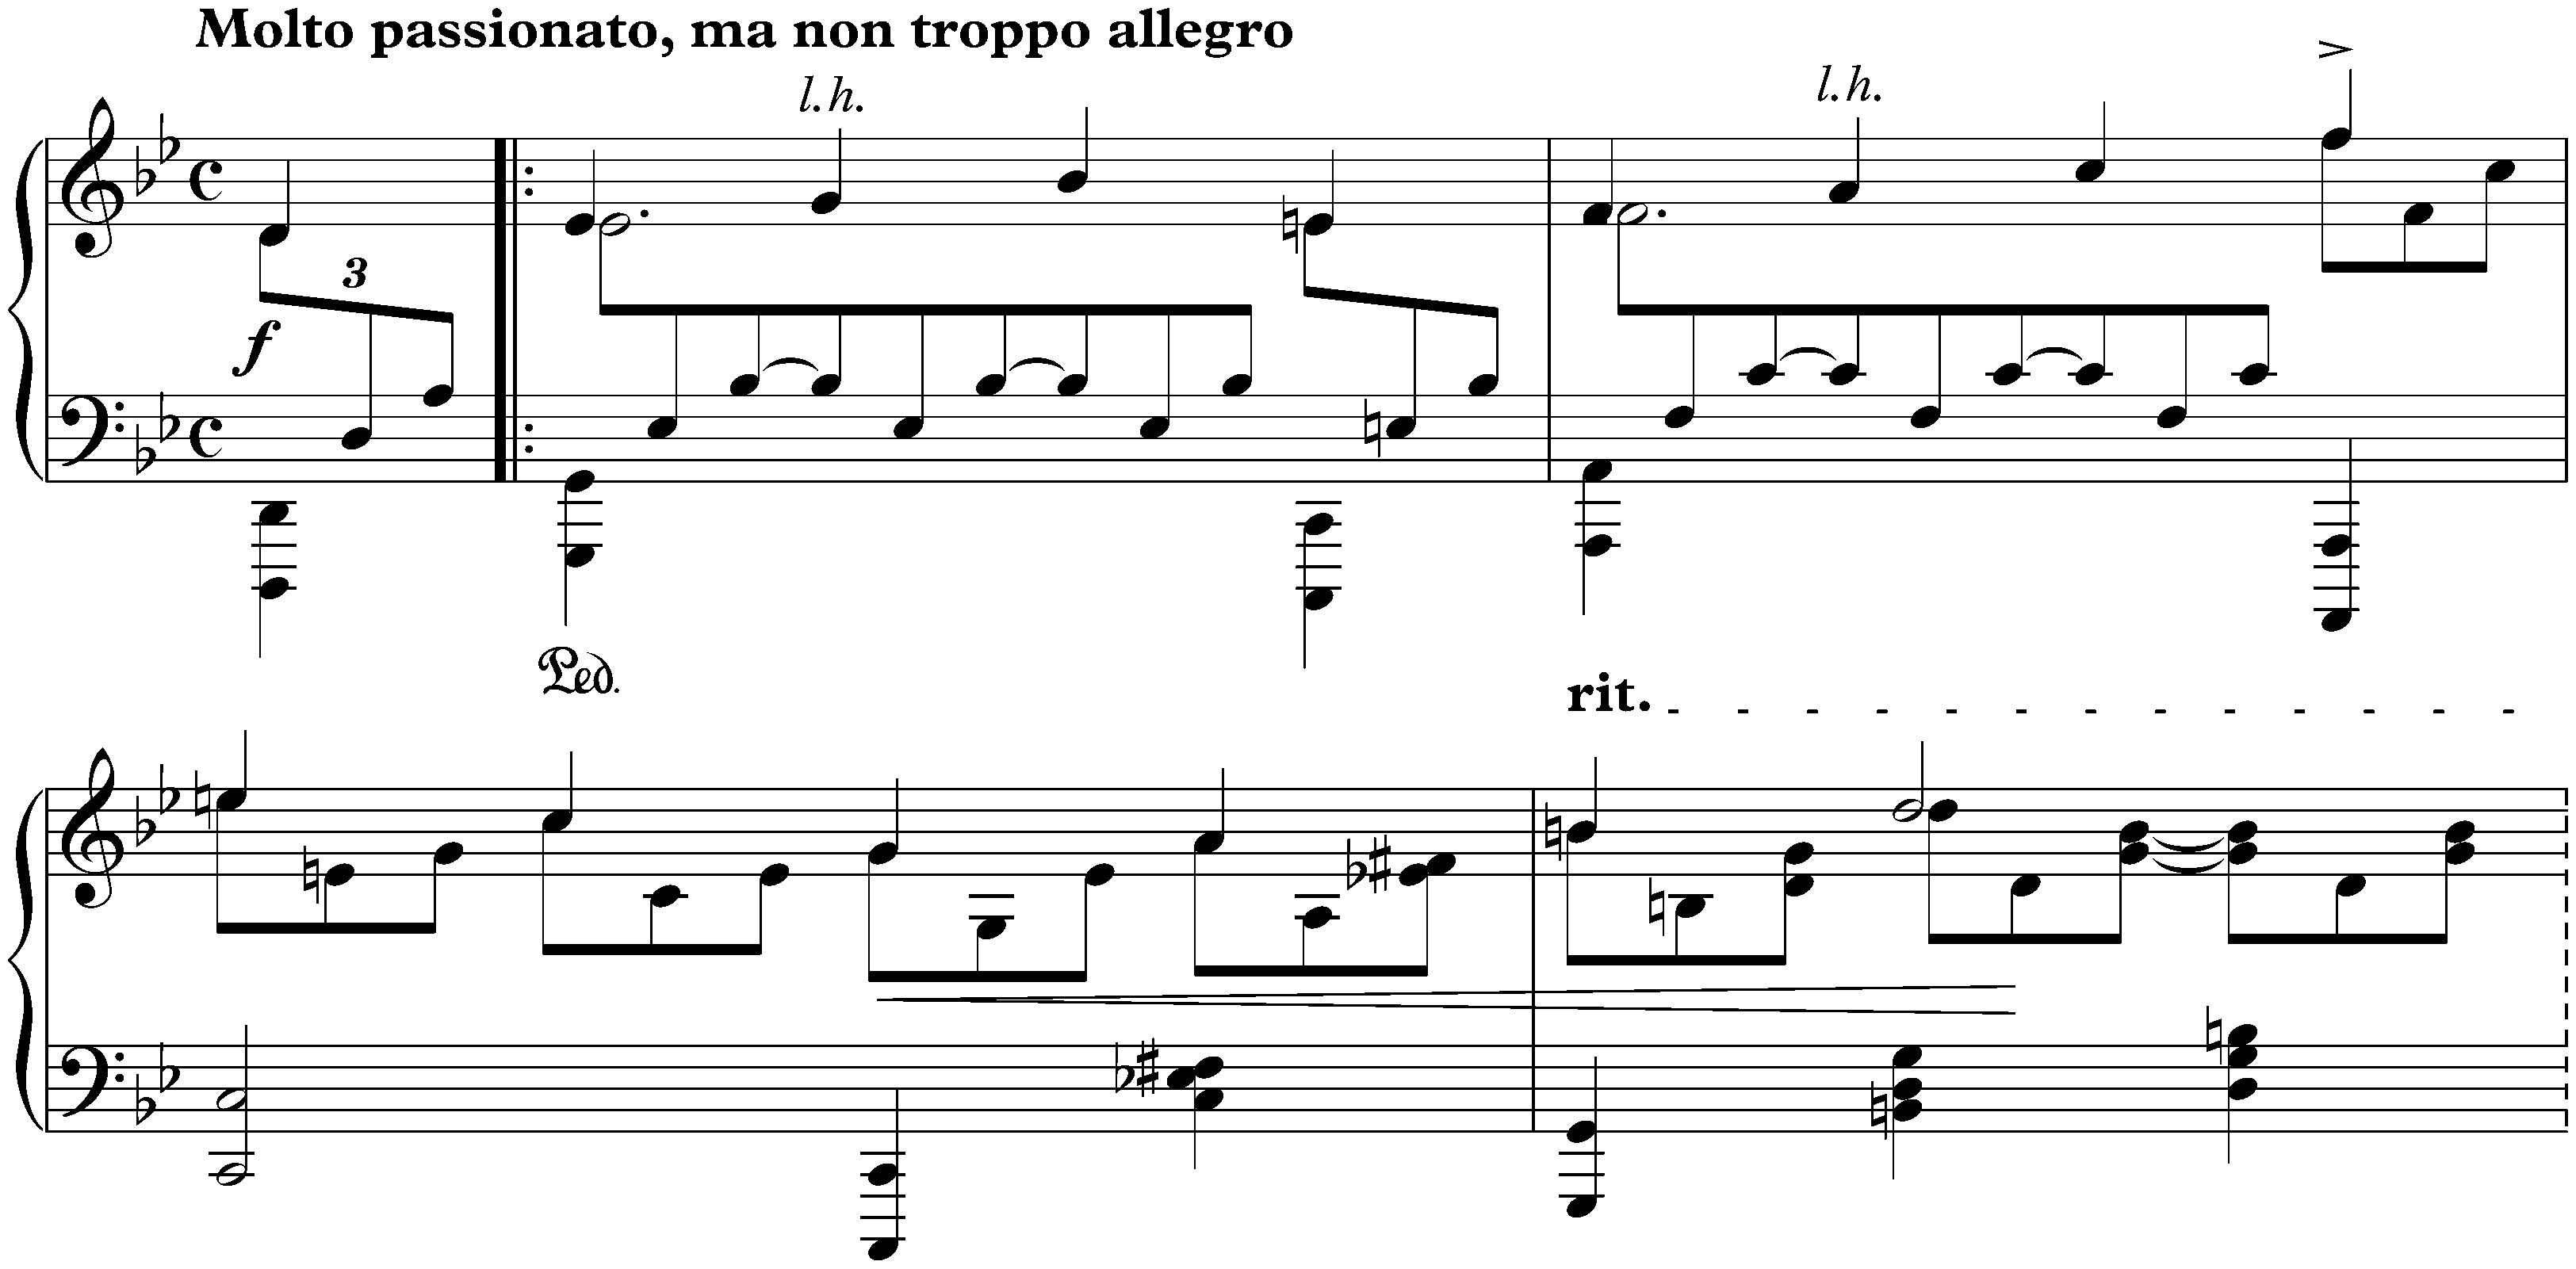 Two Rhapsodies, op. 79; 2. G minor